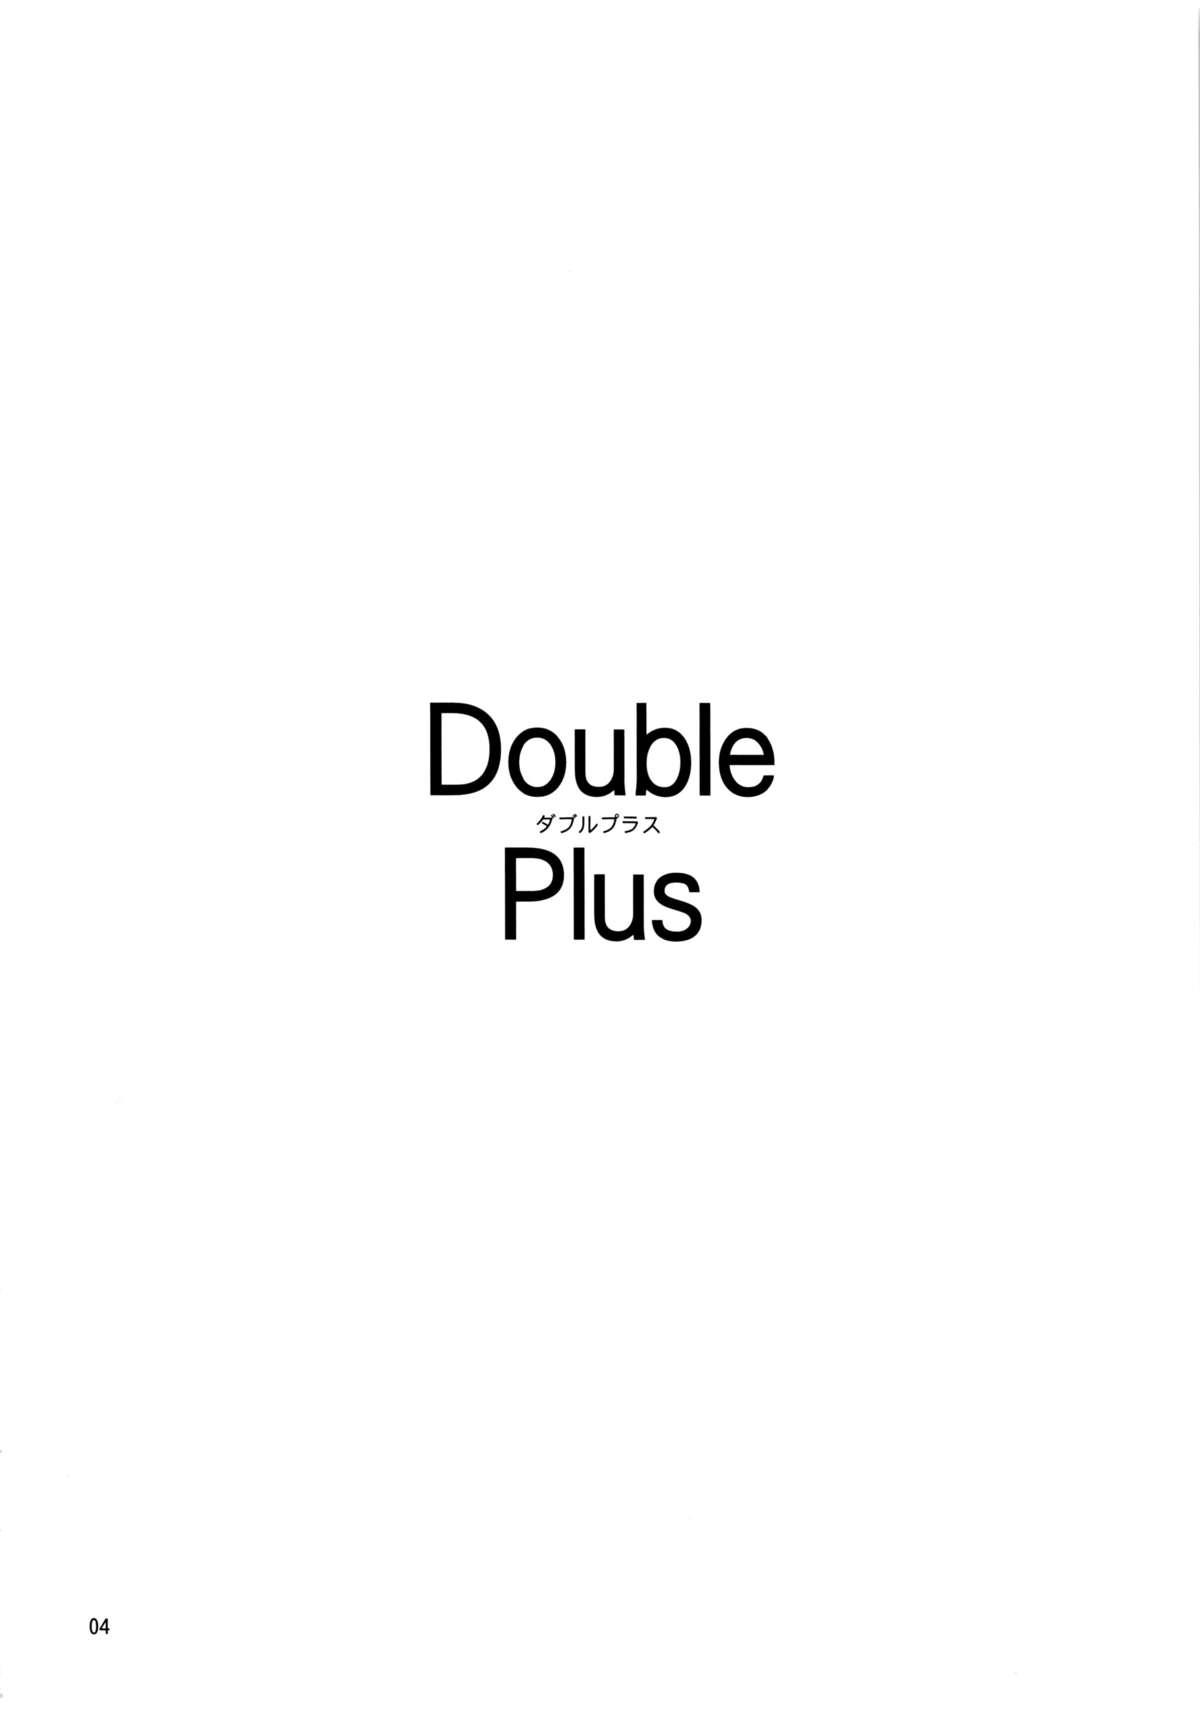 Double Plus 2